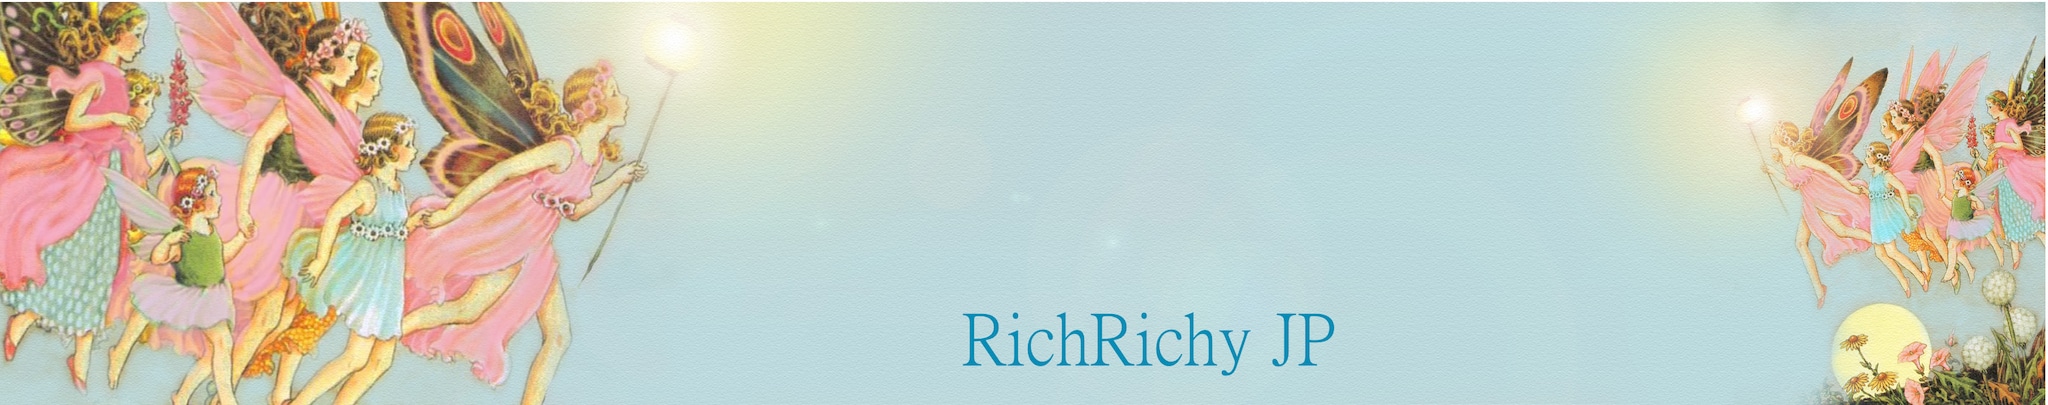 richrichy